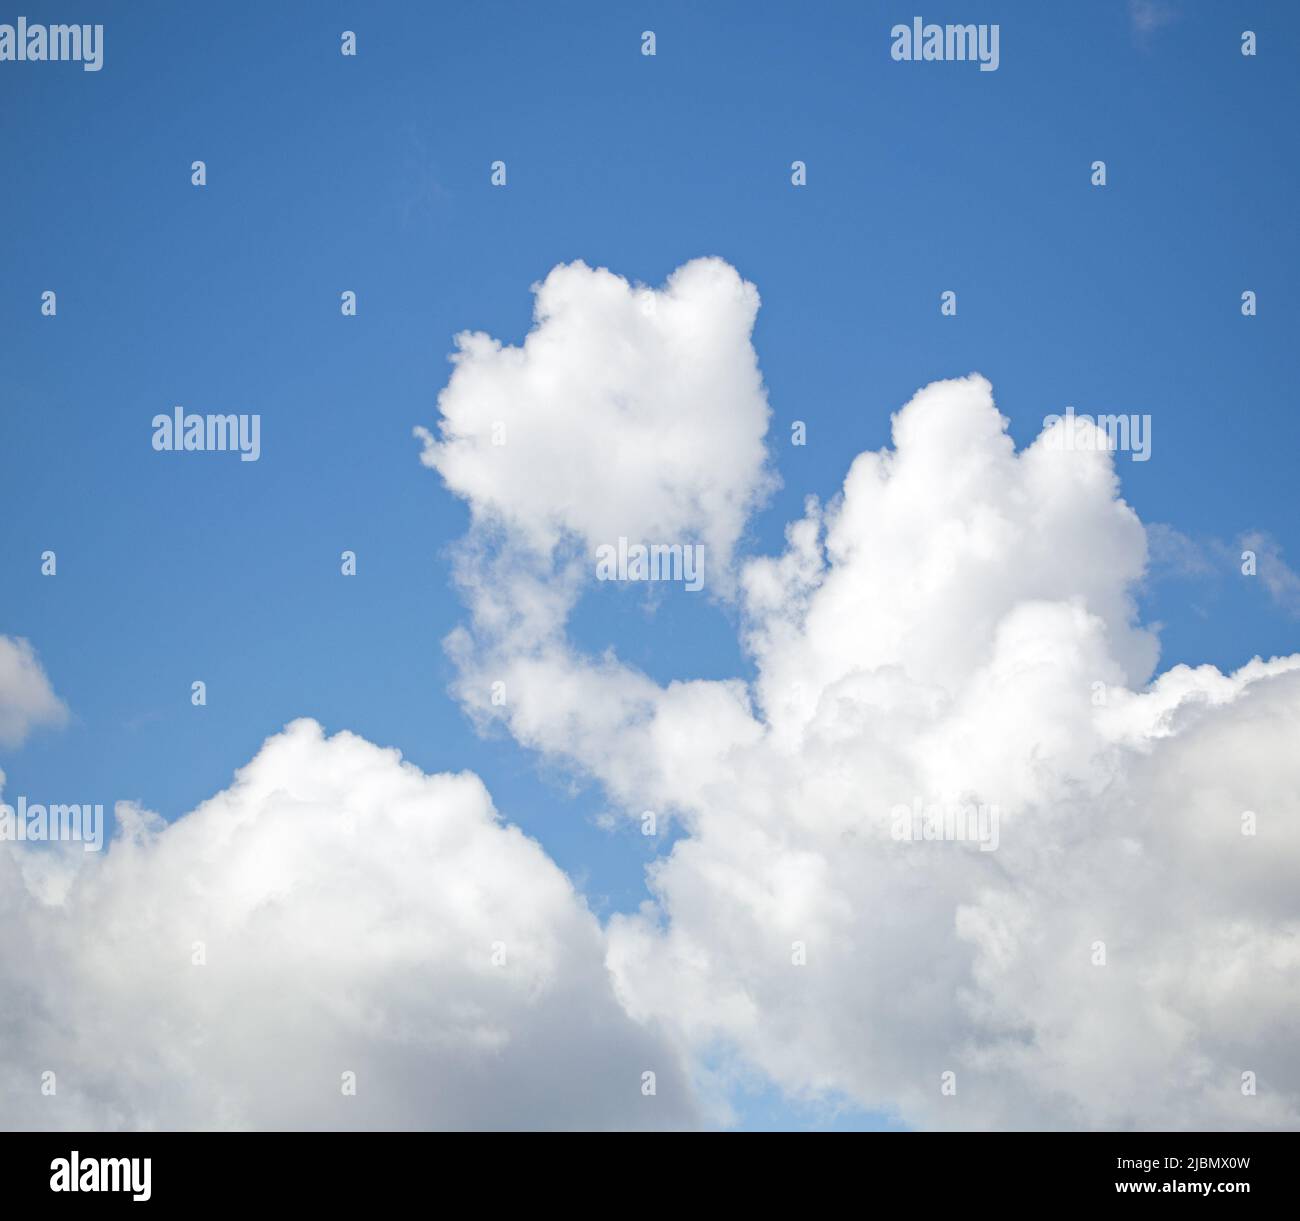 Cloudscape avec ciel bleu profond et nuages blancs moelleux Banque D'Images